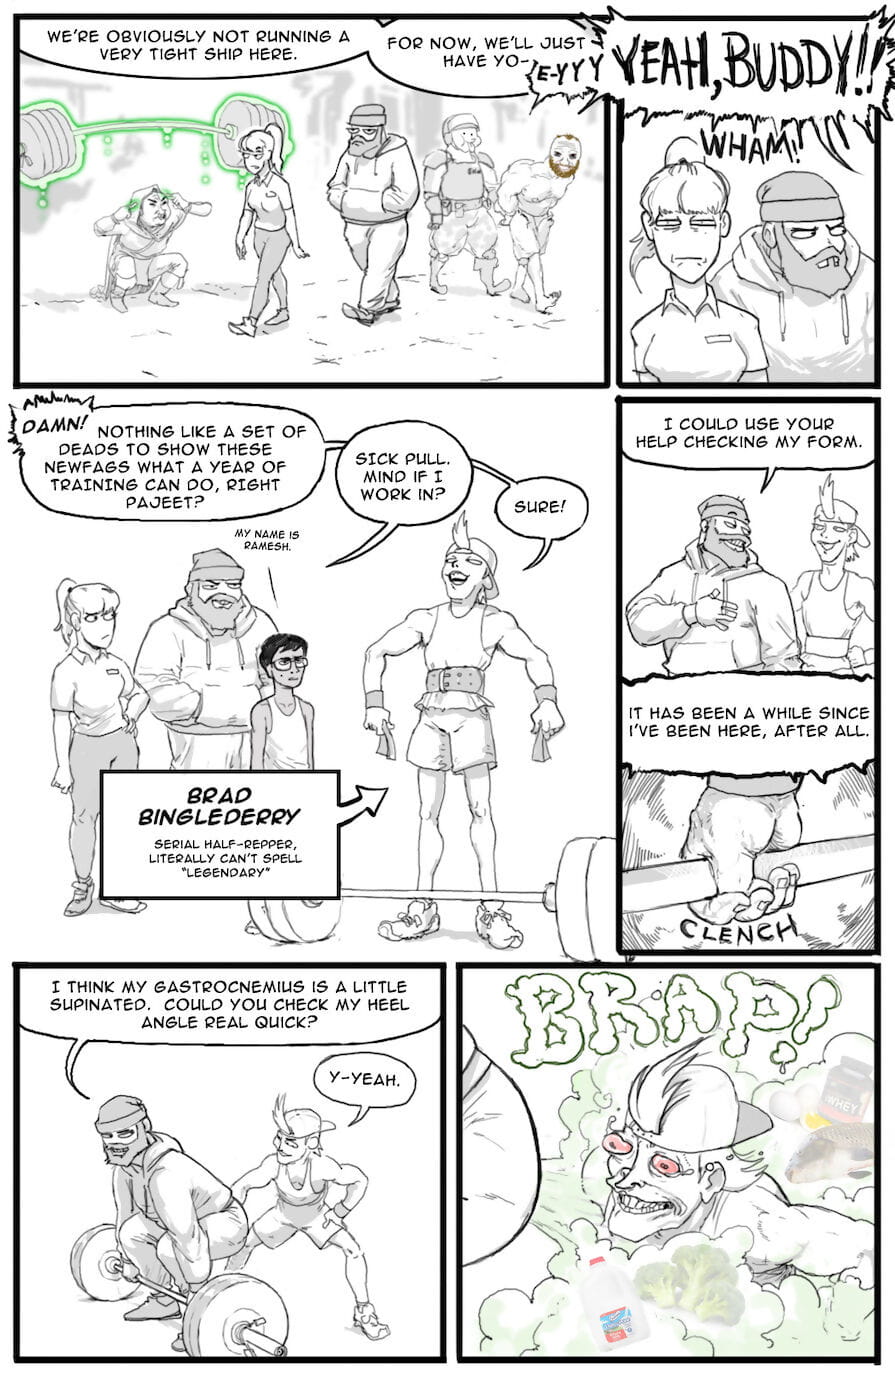 /fit/ komiksy część 3 page 1